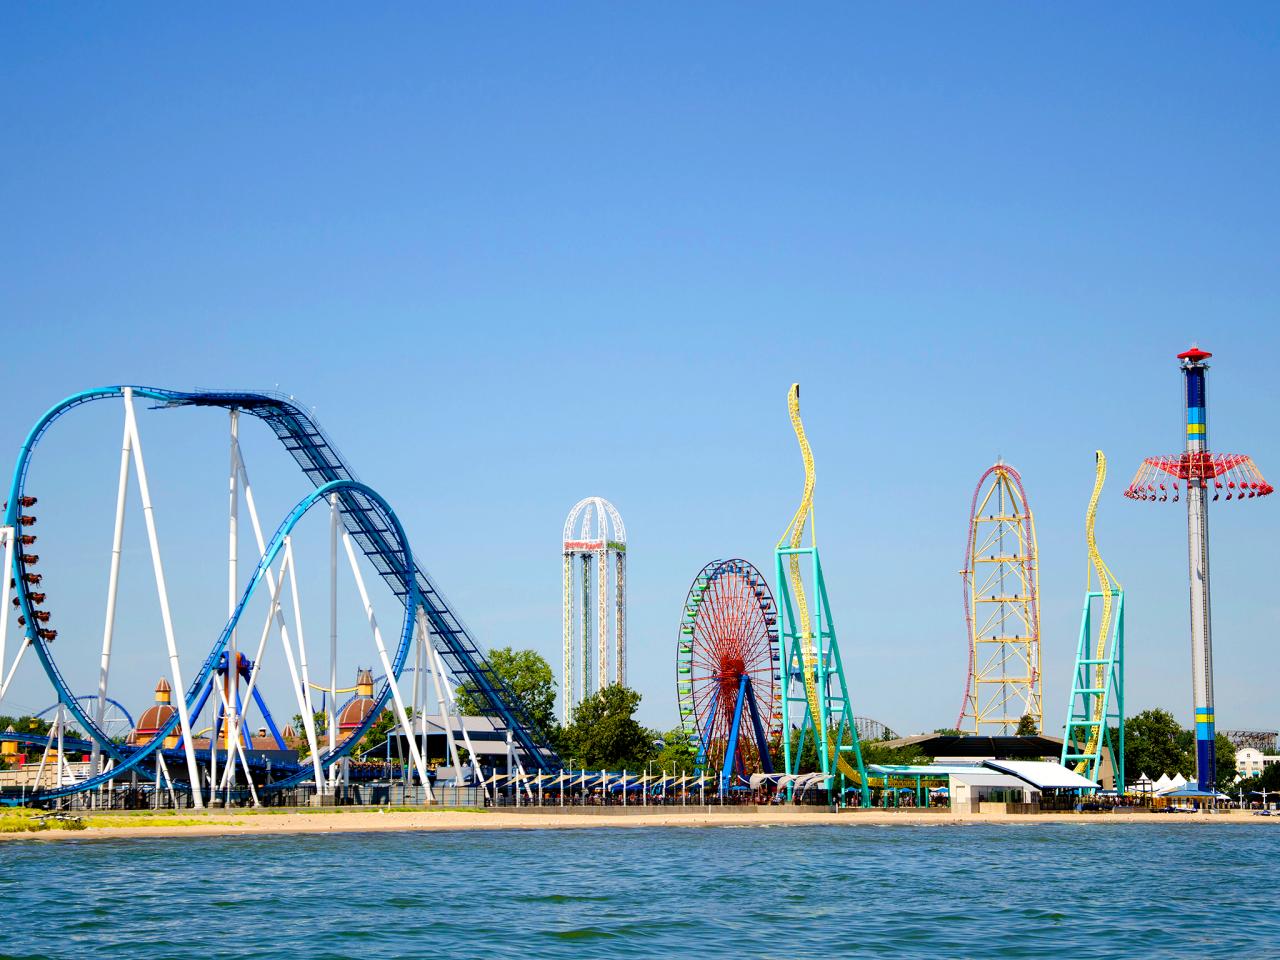 Top 10 Amusement Parks Fans Favorite Theme Parks Travel Channel Travel Channel - longest water slide ever roblox